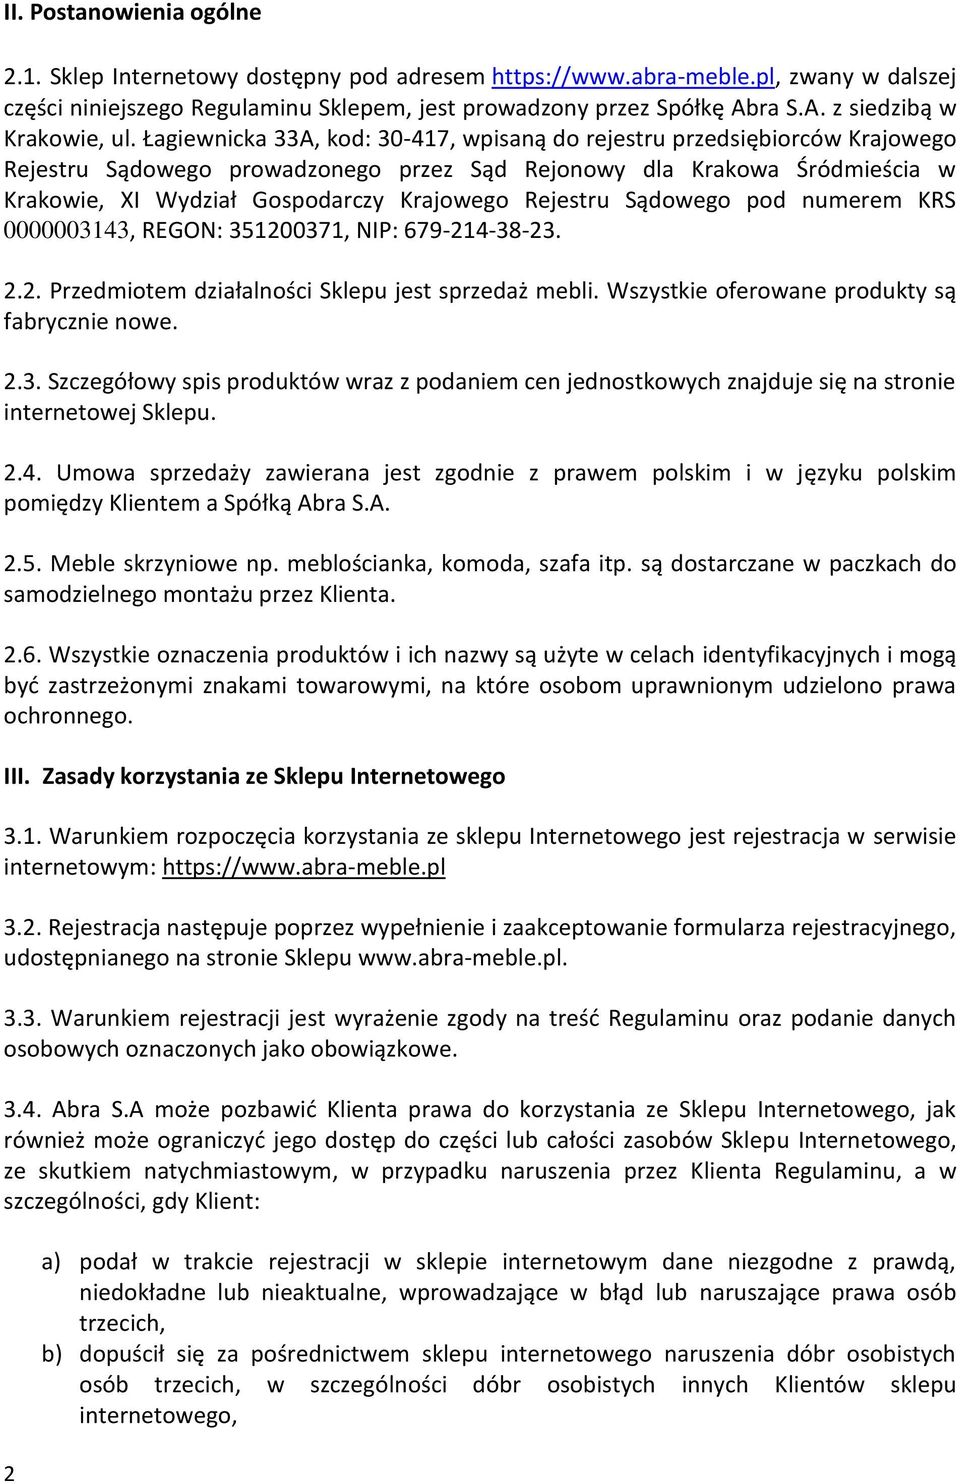 Łagiewnicka 33A, kod: 30-417, wpisaną do rejestru przedsiębiorców Krajowego Rejestru Sądowego prowadzonego przez Sąd Rejonowy dla Krakowa Śródmieścia w Krakowie, XI Wydział Gospodarczy Krajowego